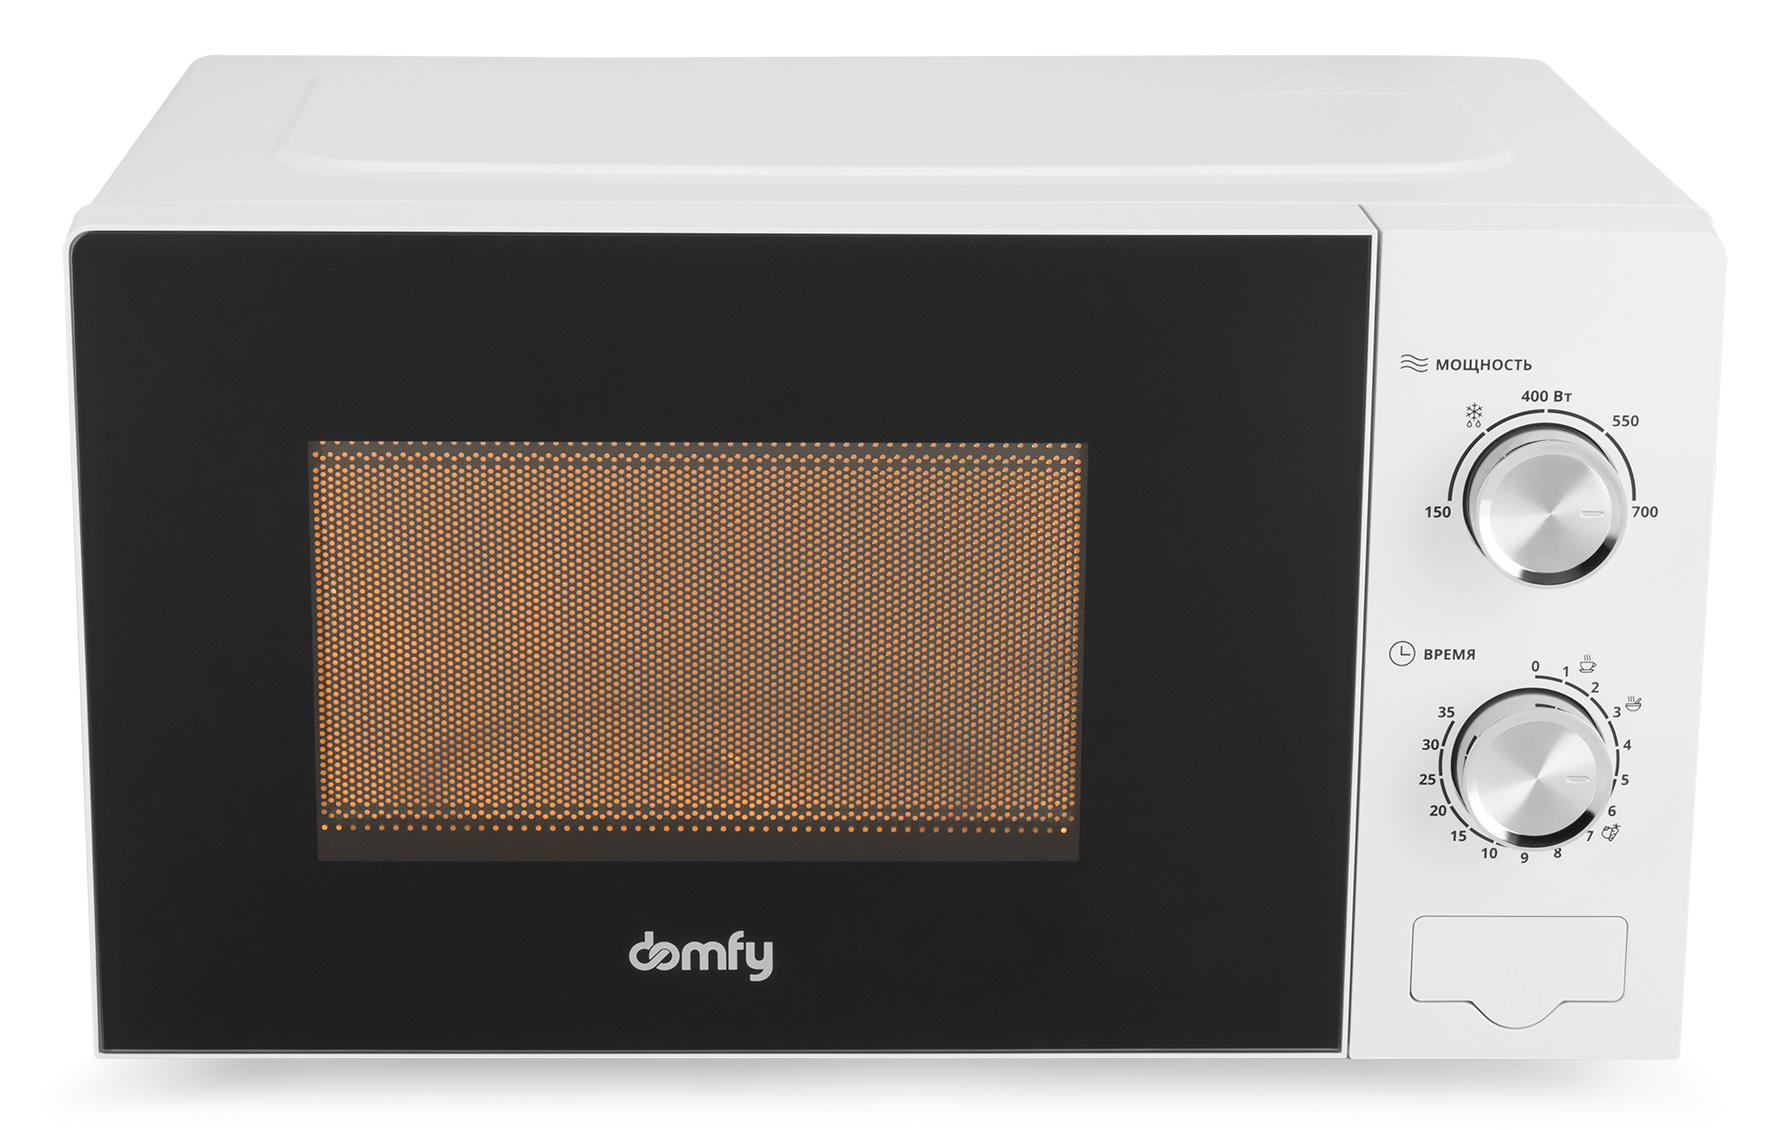 Микроволновая печь соло DOMFY DSW-MW203 белый микроволновая печь domfy dsb mw104 900 вт чёрный